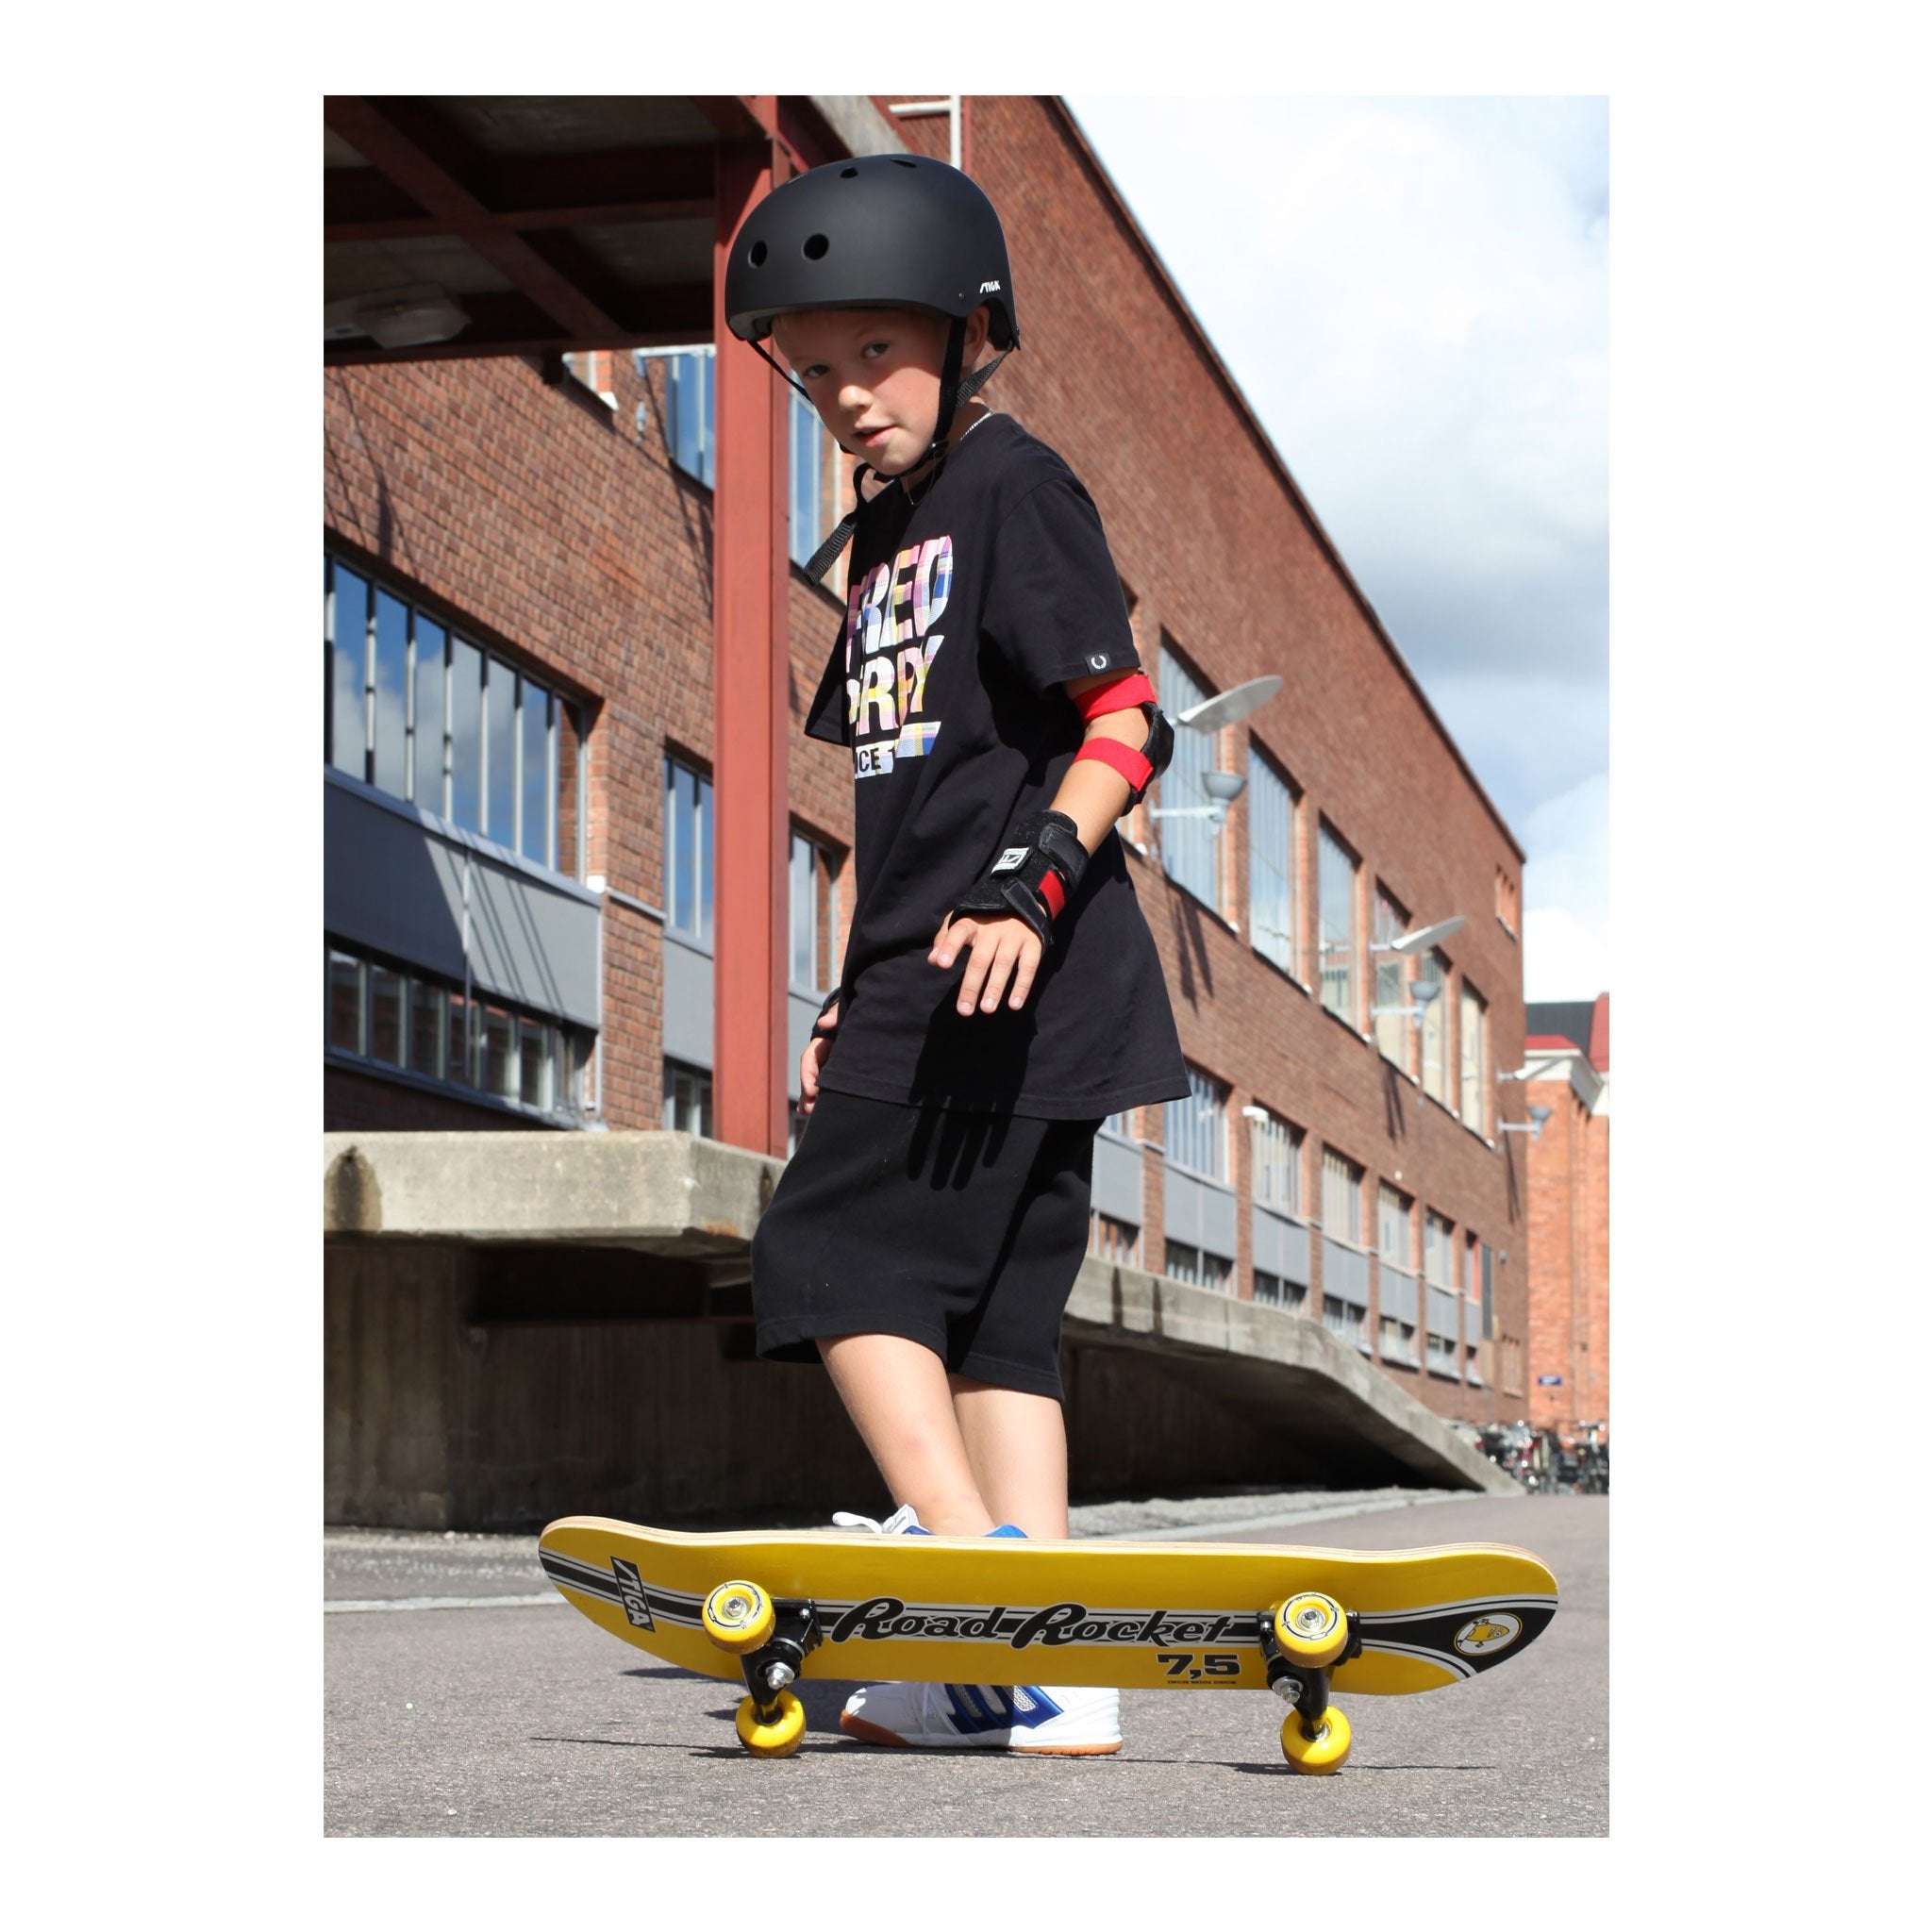 Skateboard ROAD ROCKET 7.5 - 78,5x19,5 cm